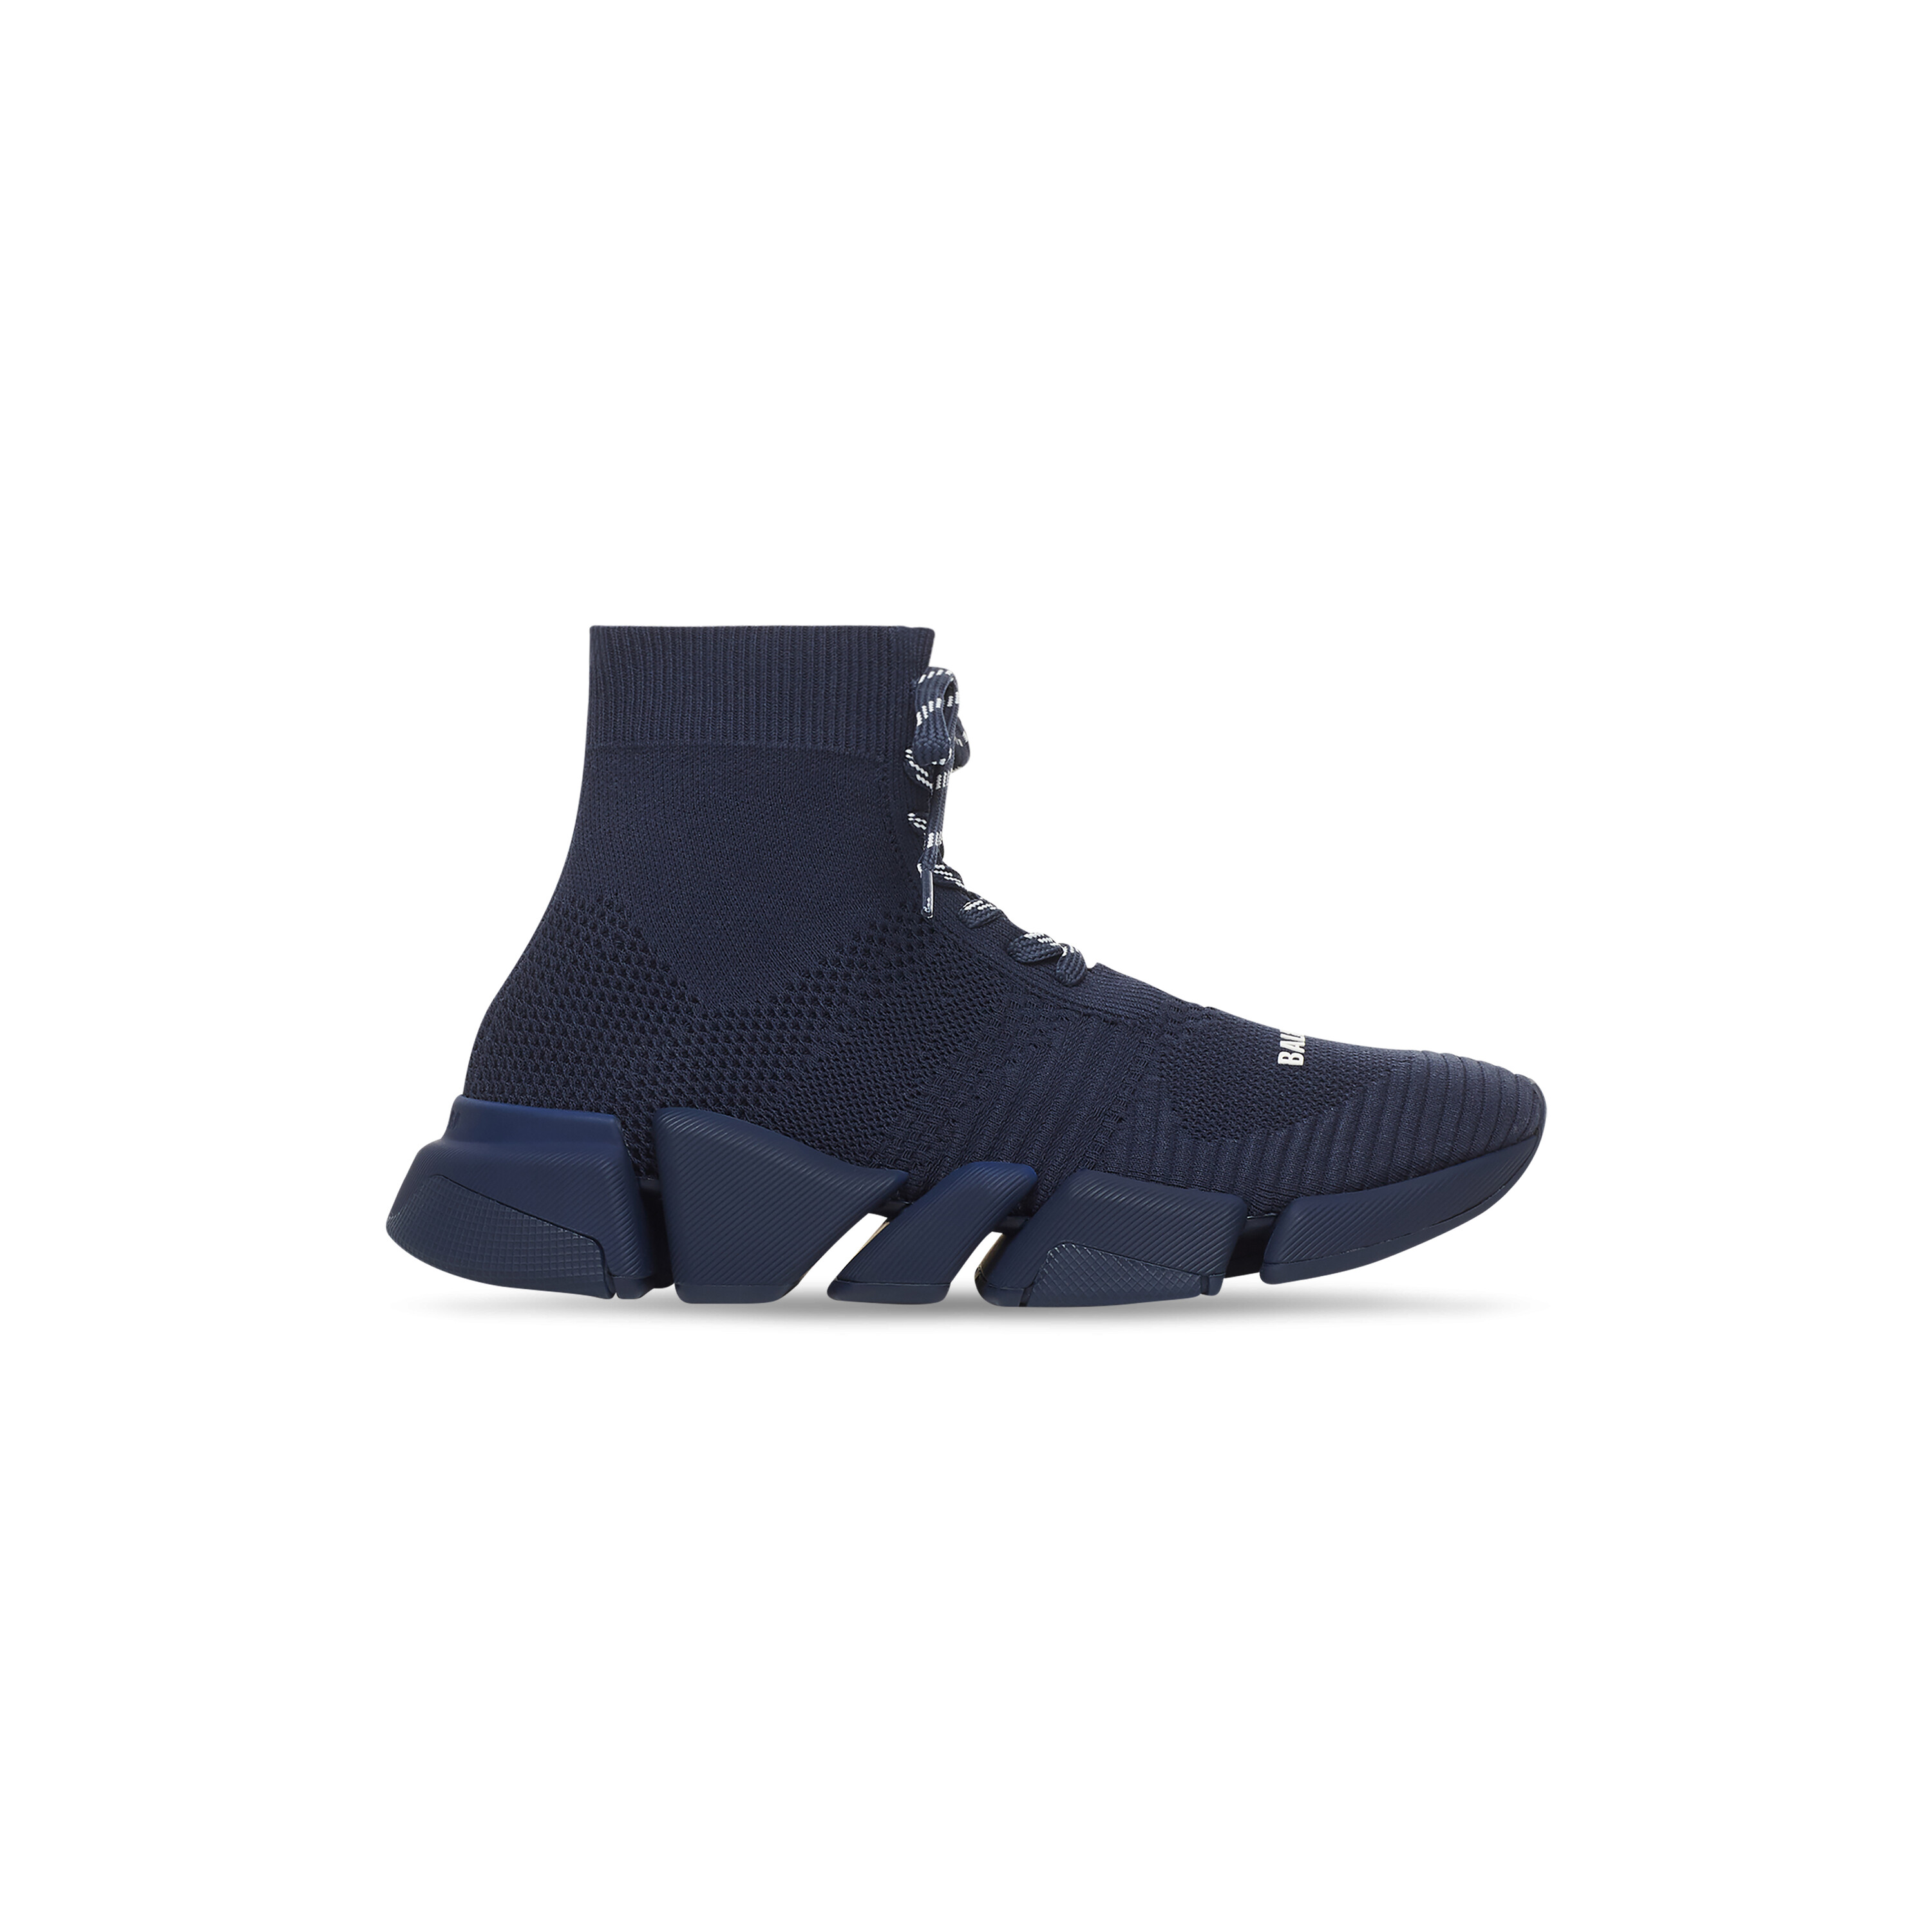 Balenciaga Blue Leather High Top Sneakers Size 43 Balenciaga  TLC